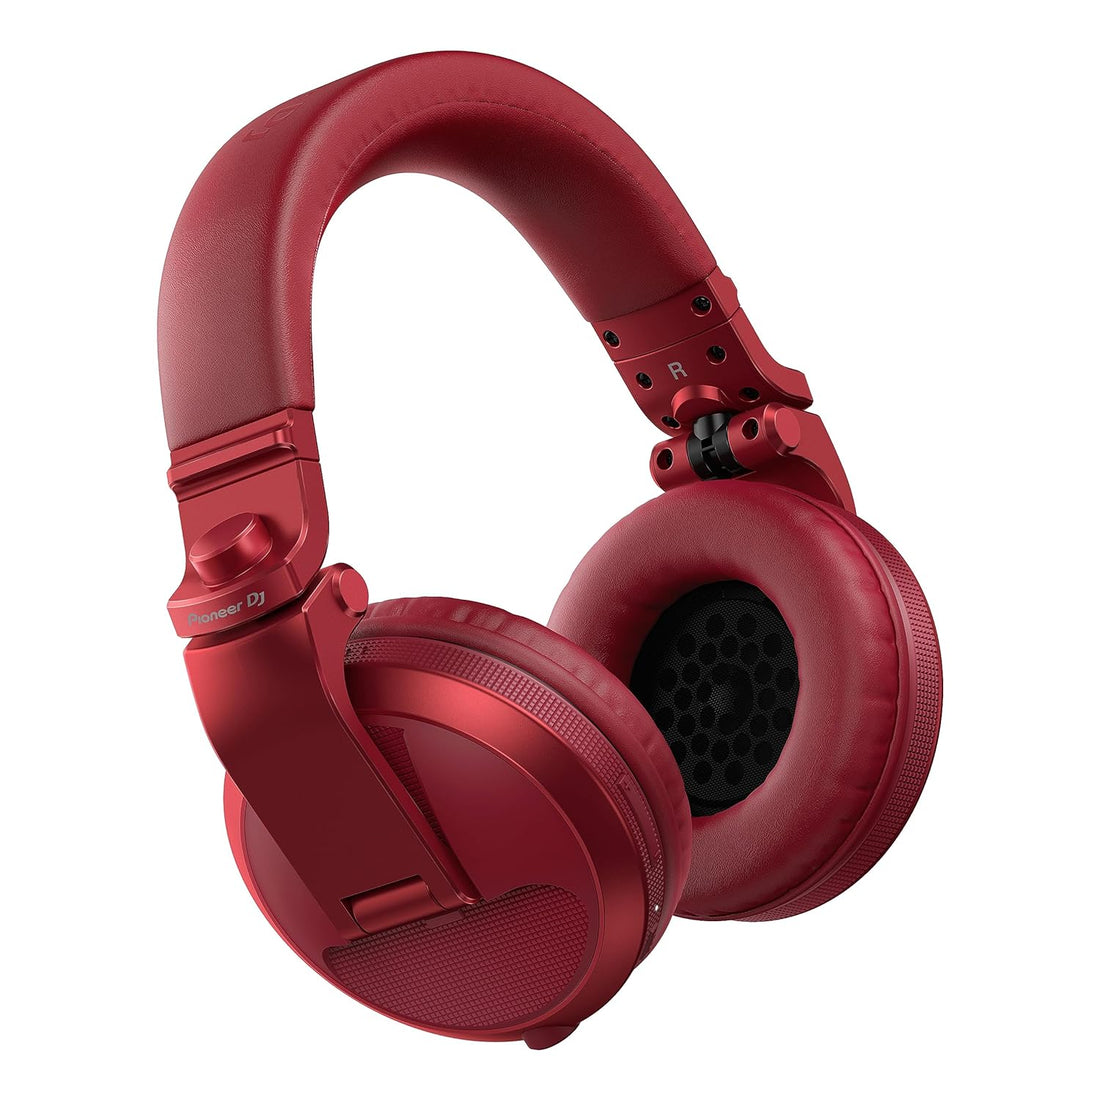 Pioneer DJ DJ Headphones, Red (HDJ-X5BT-R)